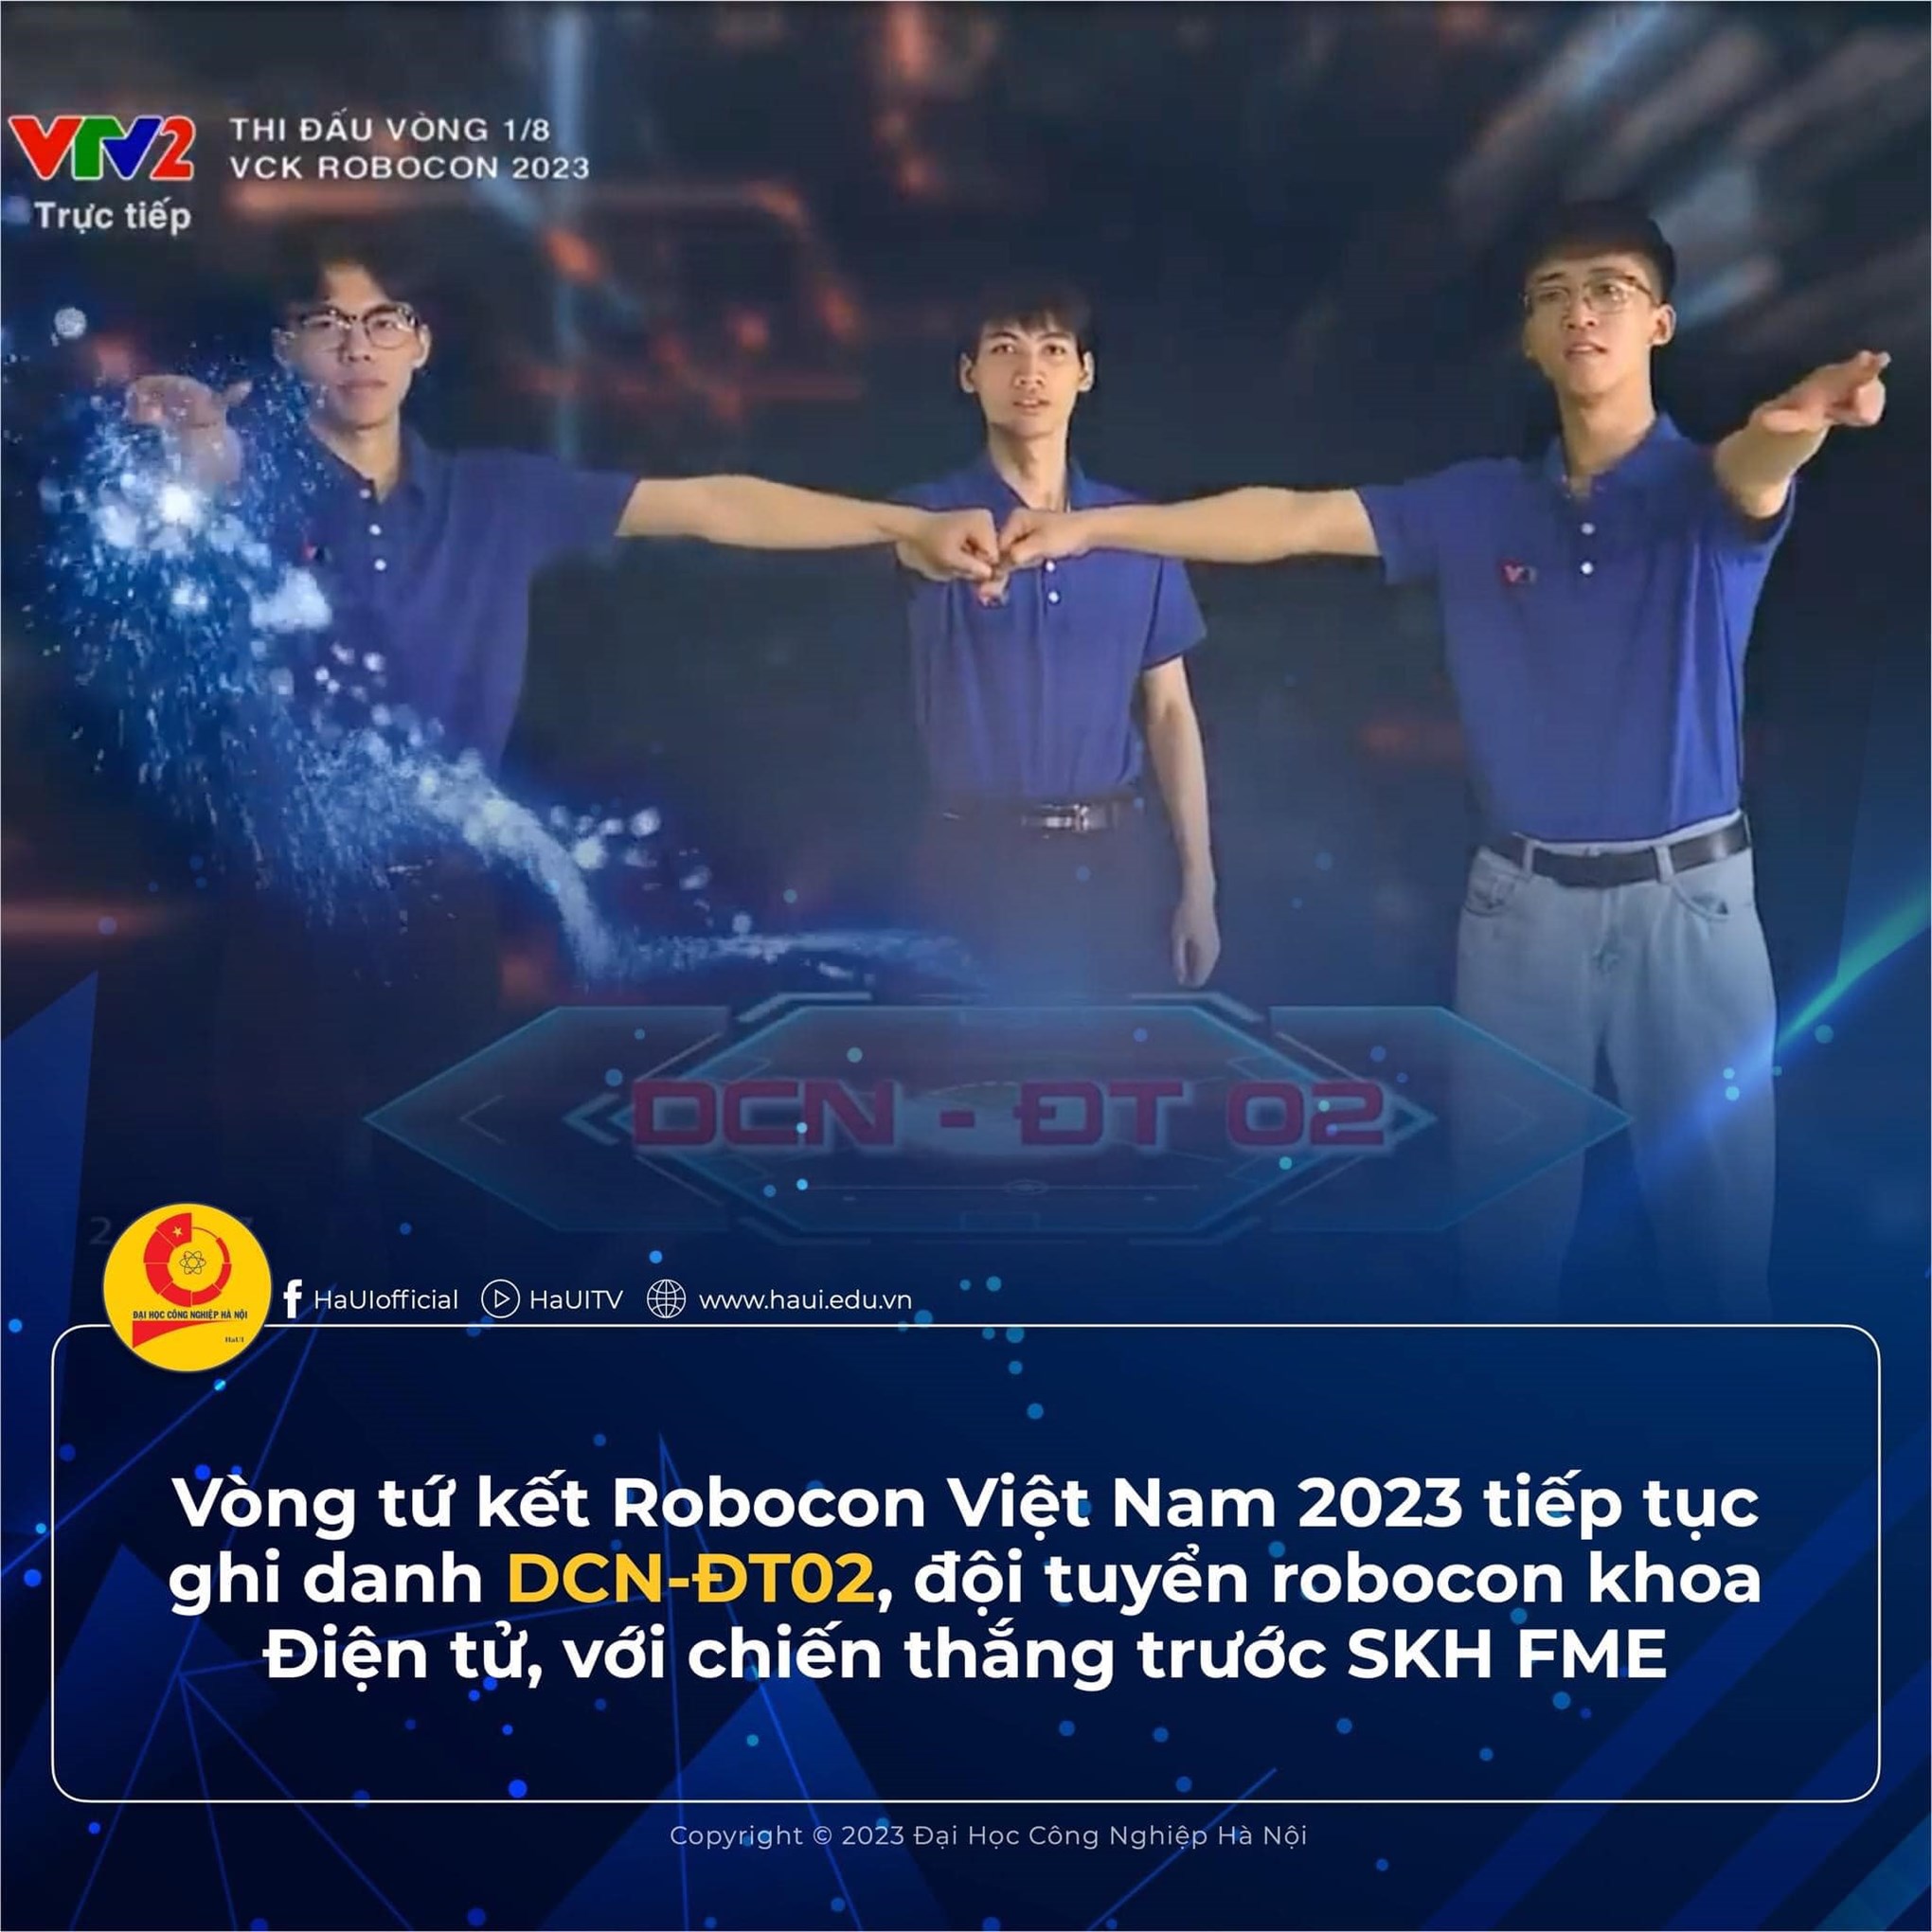 03 Chiến thắng Chey – yo tại vòng chung kết Robocon – Nhà vô địch Robocon 2023 gọi tên ĐT02, Đại học Công nghiệp Hà Nội !!!!